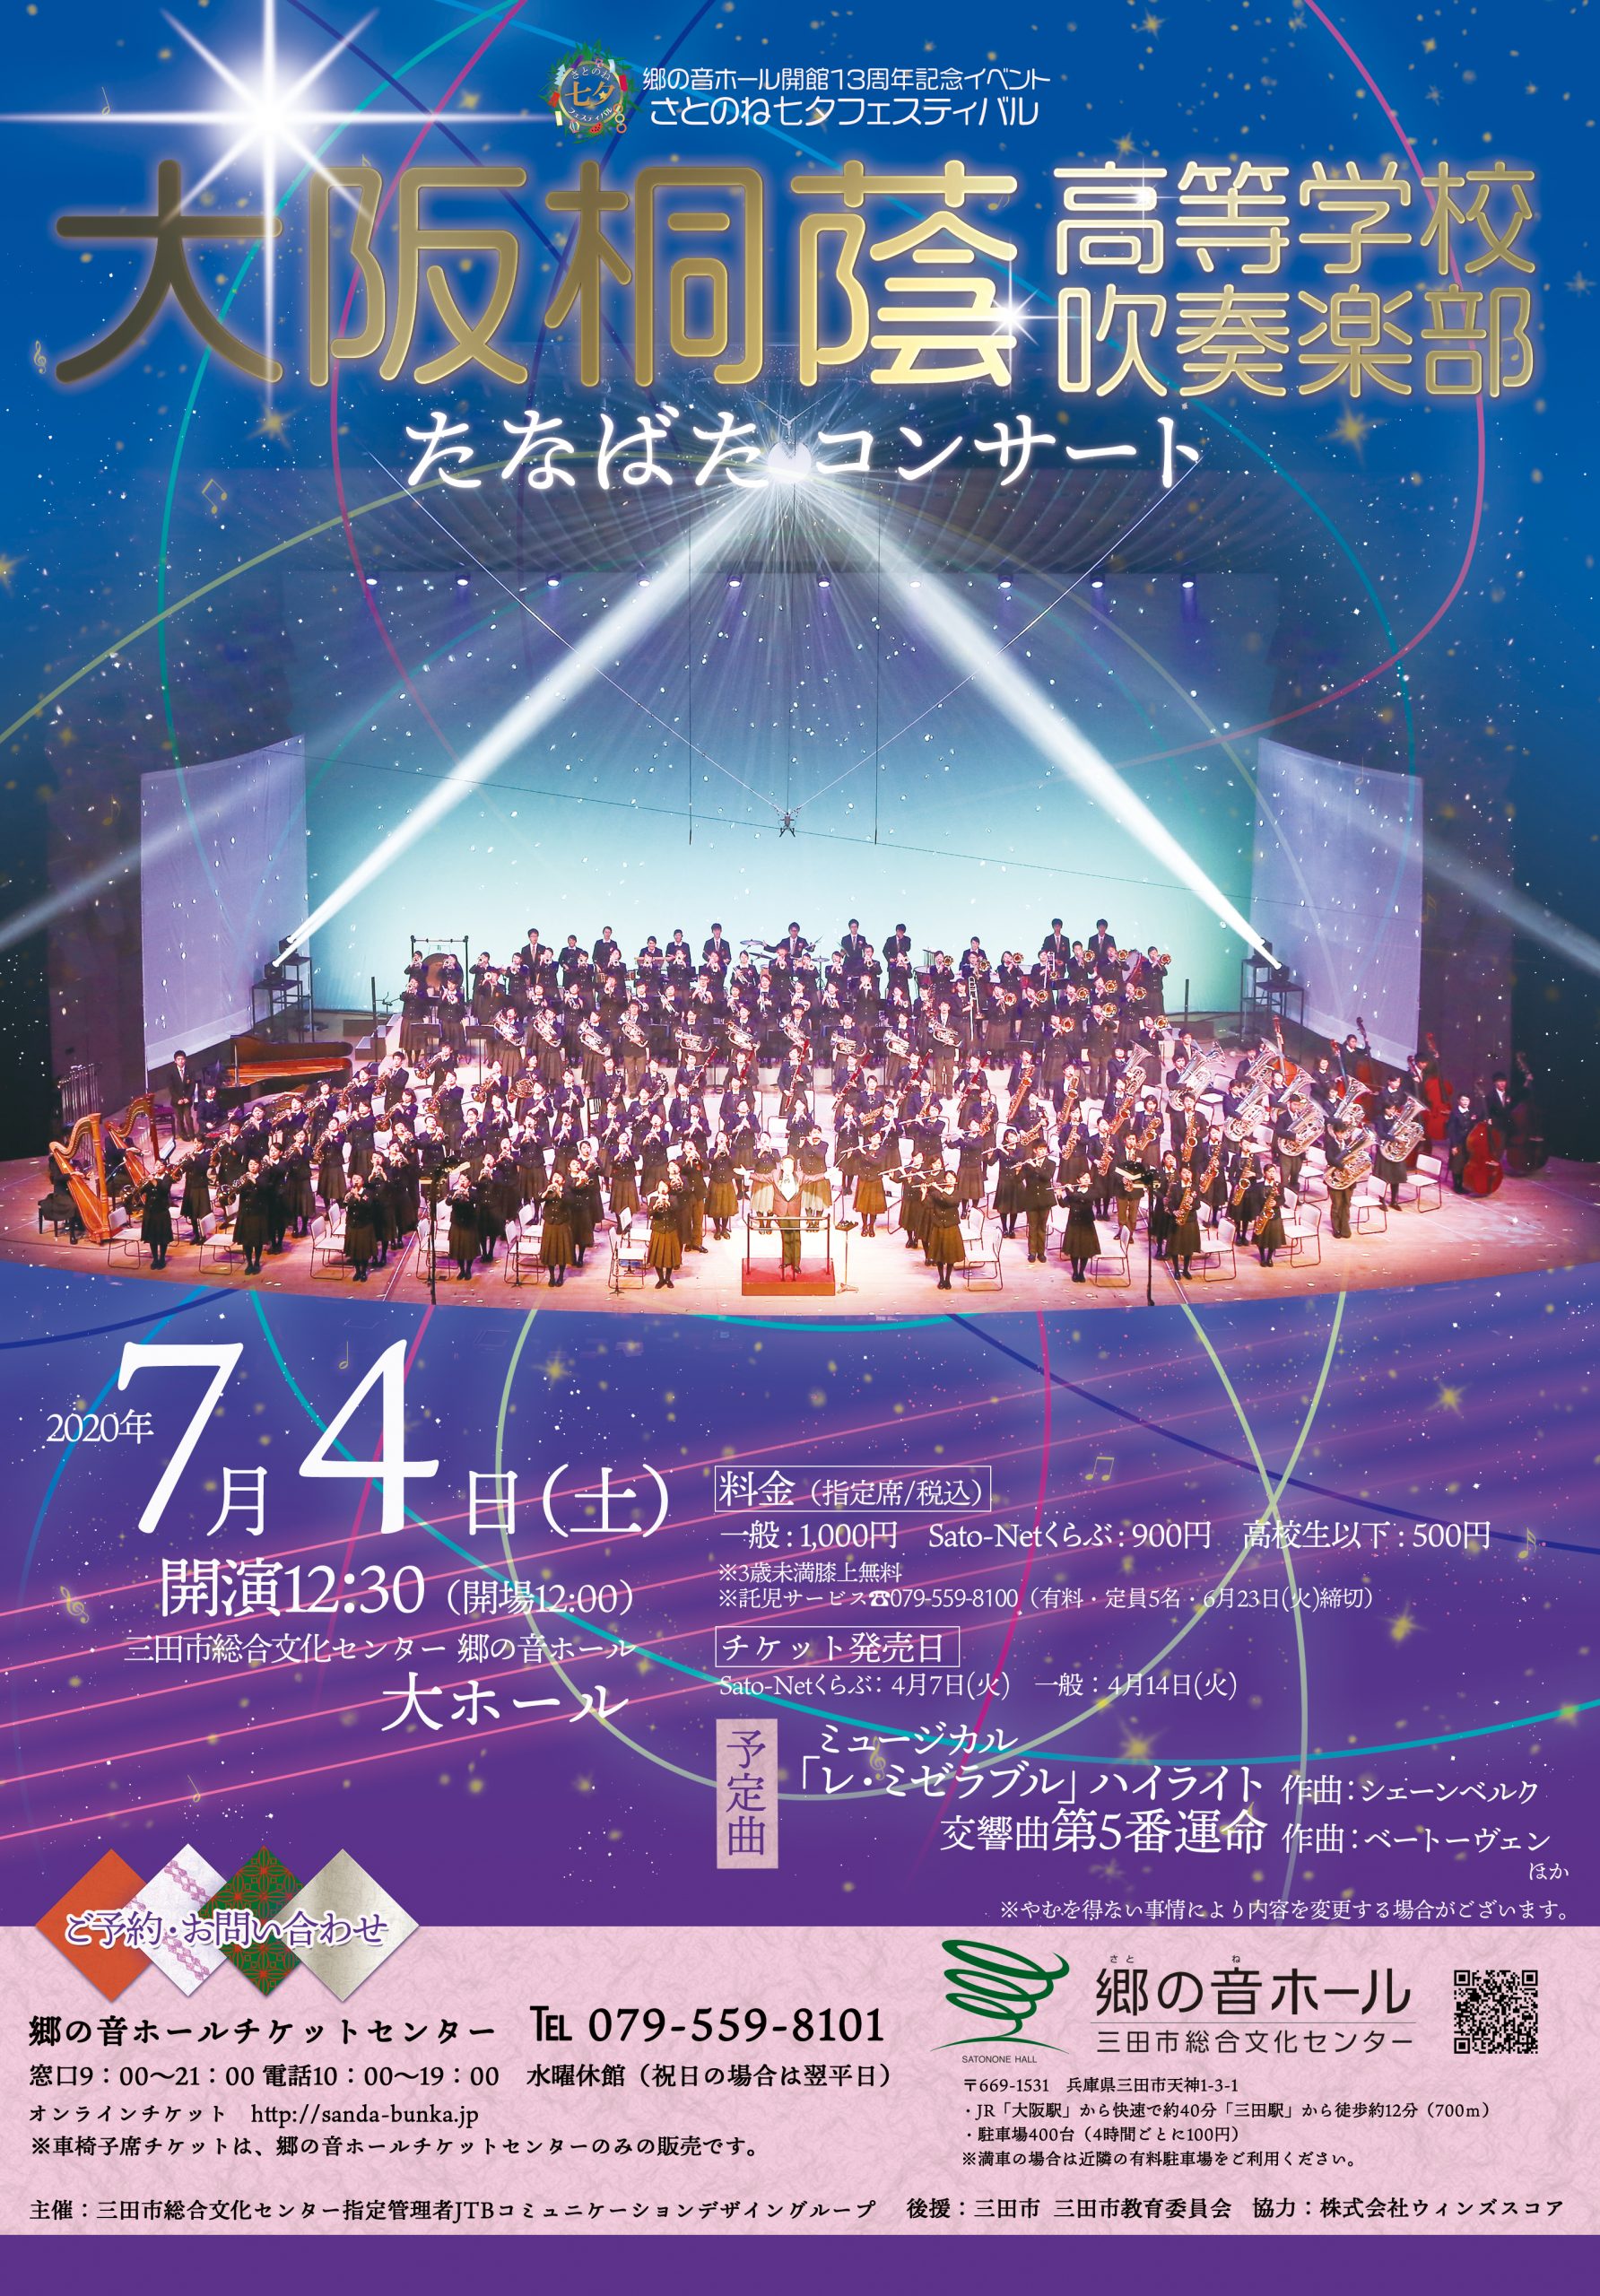 【9/13に延期】大阪桐蔭高等学校吹奏楽部たなばたコンサート